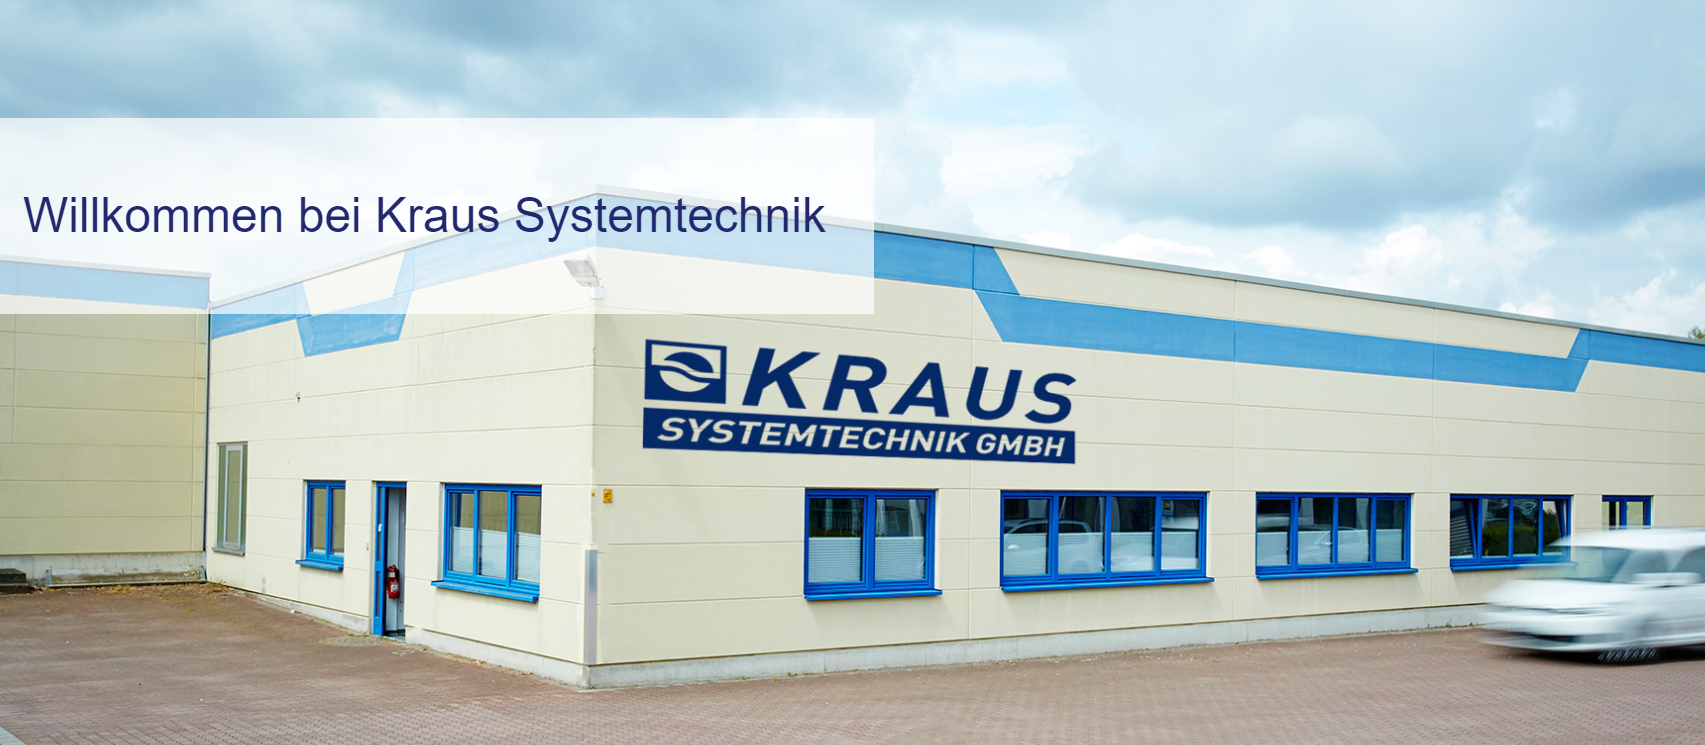 Kraus Systemtechnik GmbH, Gewerbestrasse 13b in Bochum